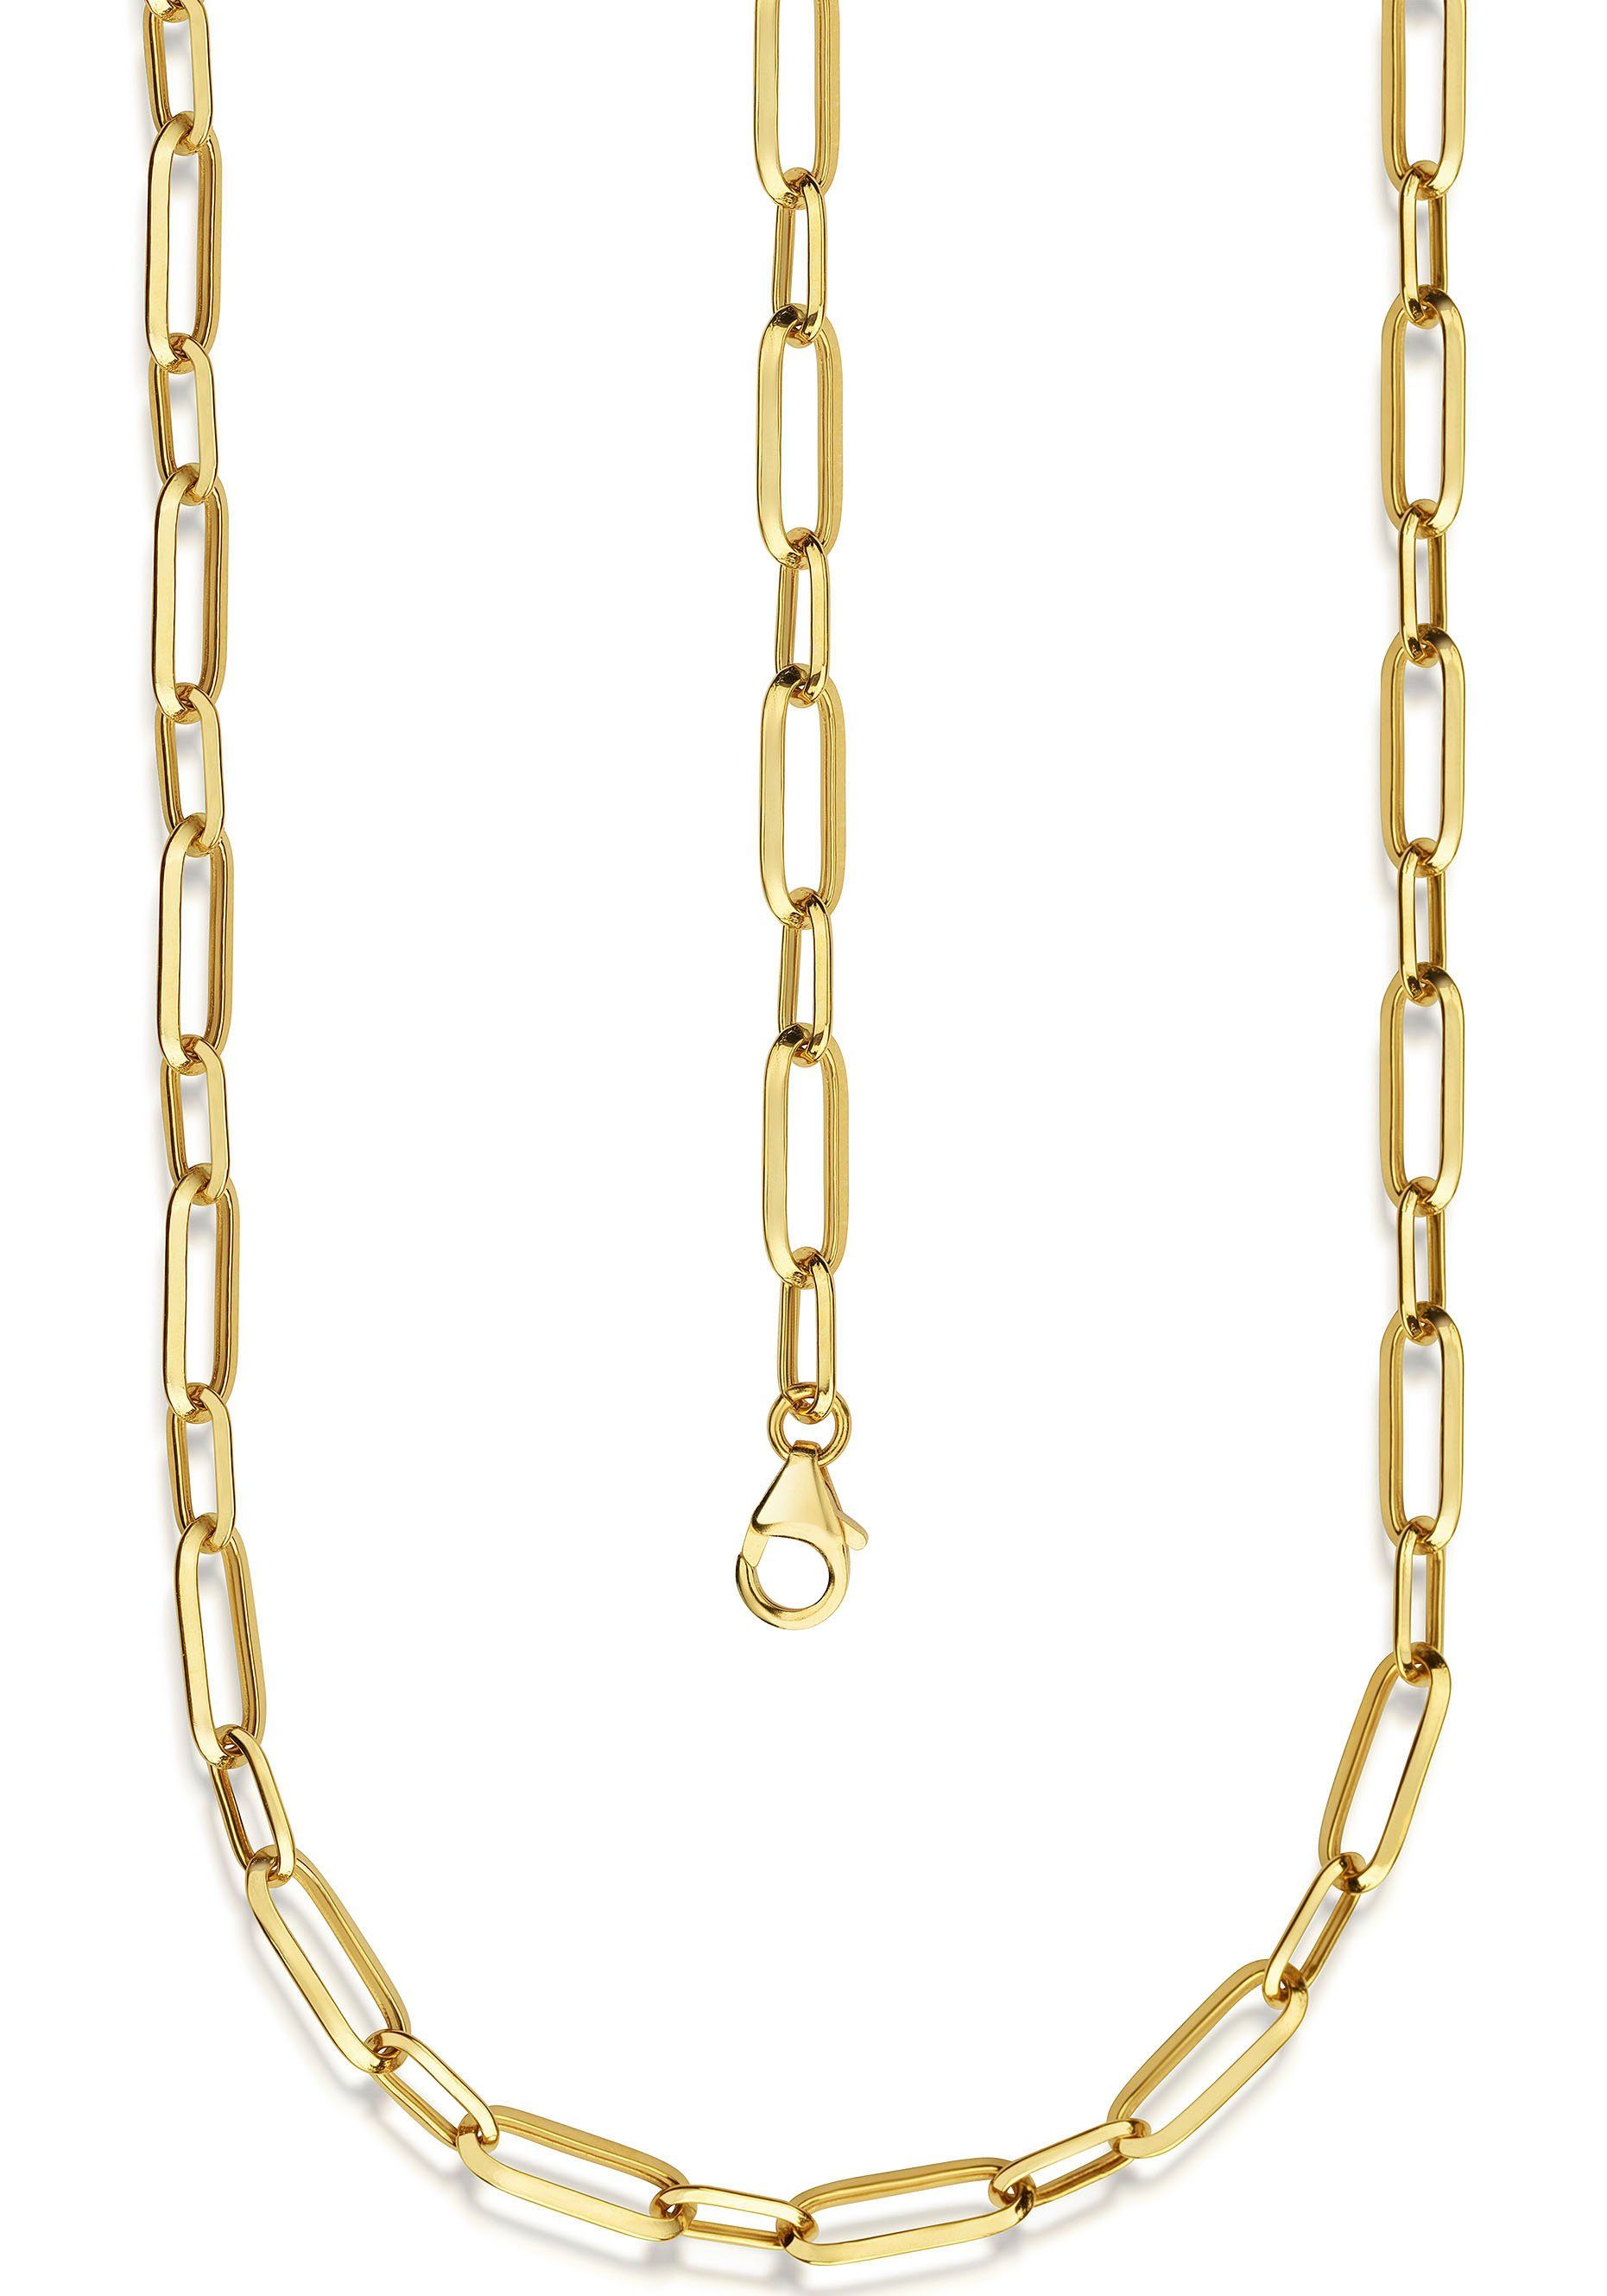 Firetti Goldkette Schmuck Geschenk Gold 585, Langankerkette, ca. 6 mm breit, zu Kleid, Shirt, Jeans, Sneaker! Anlass Geburtstag Weihnachten